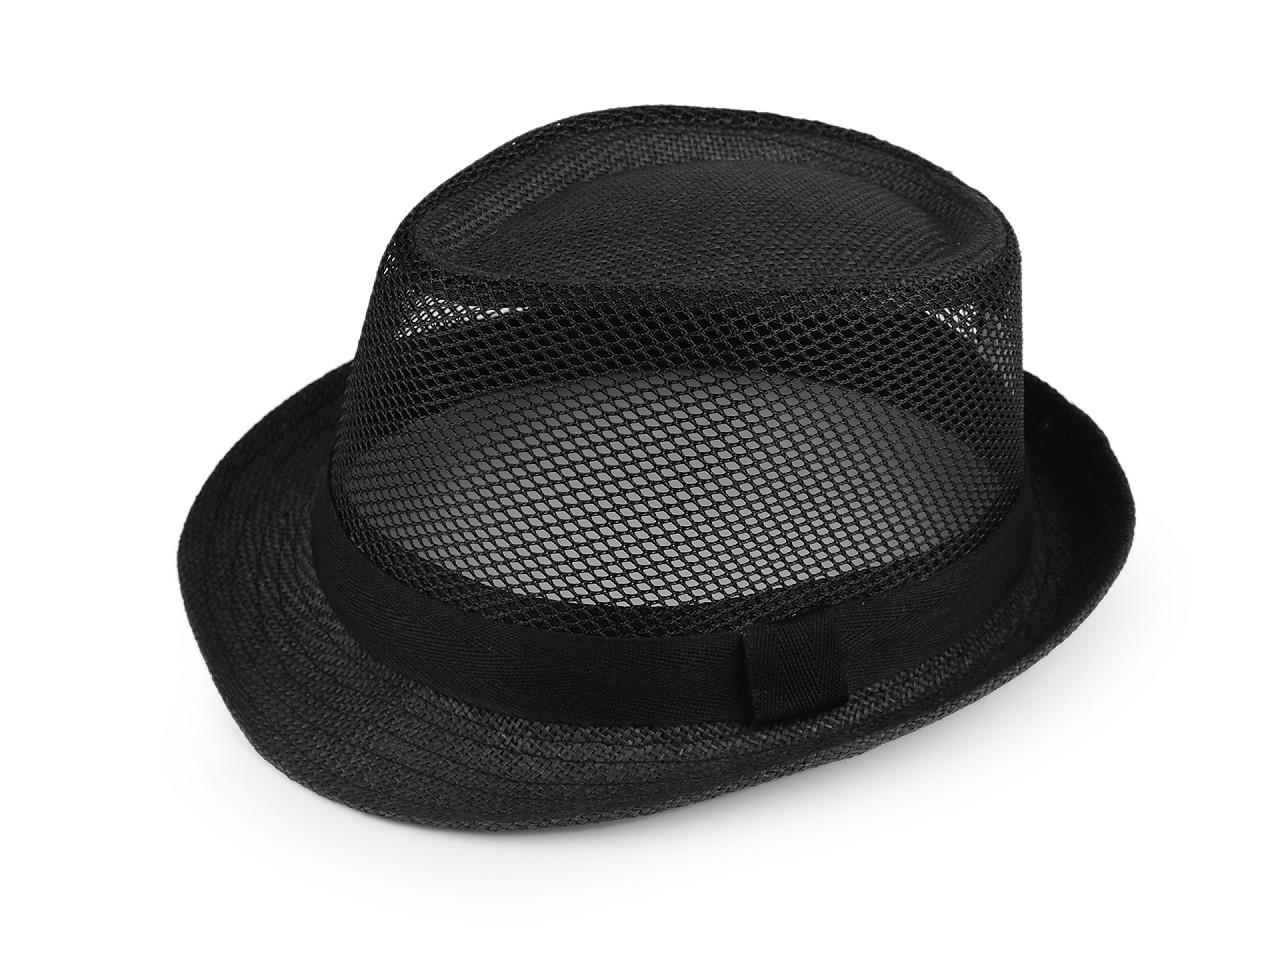 Letní klobouk / slamák unisex, barva 13 černá